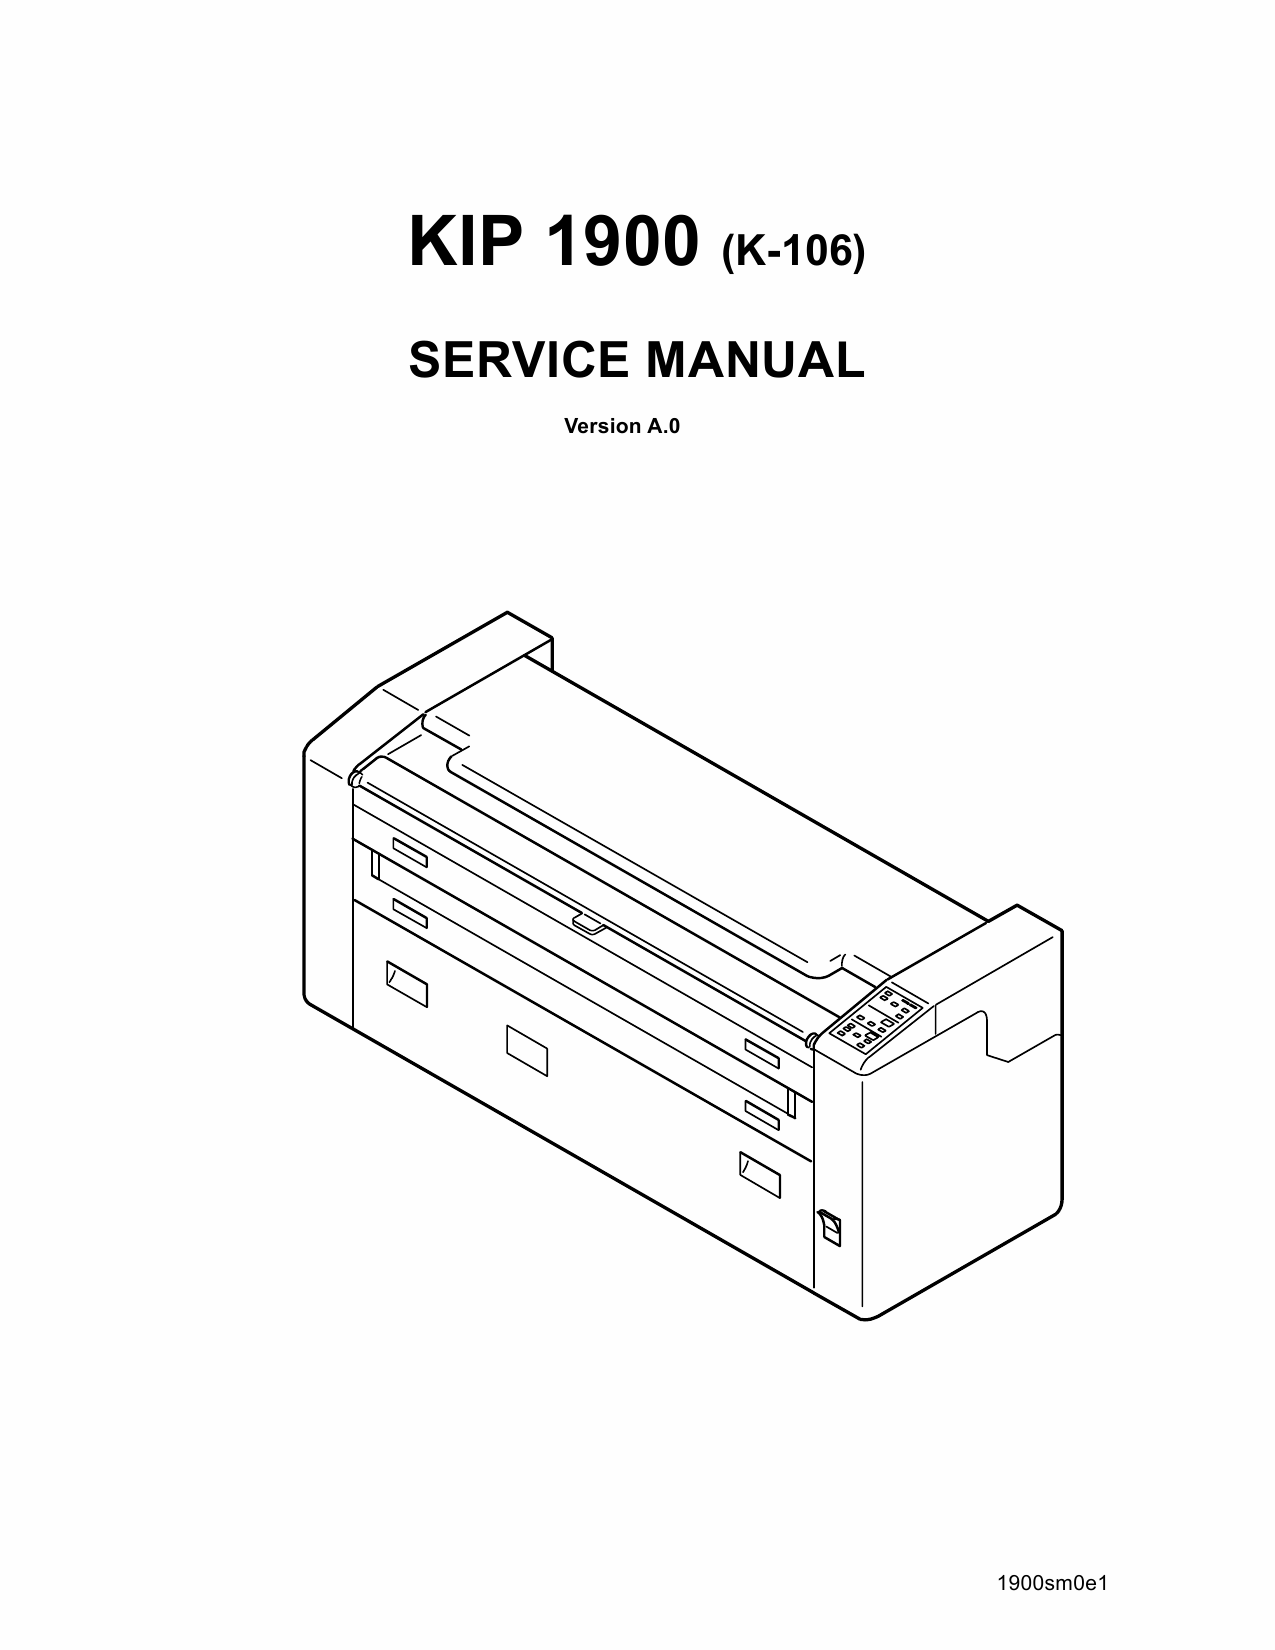 KIP 1900 Parts and Service Manual-1